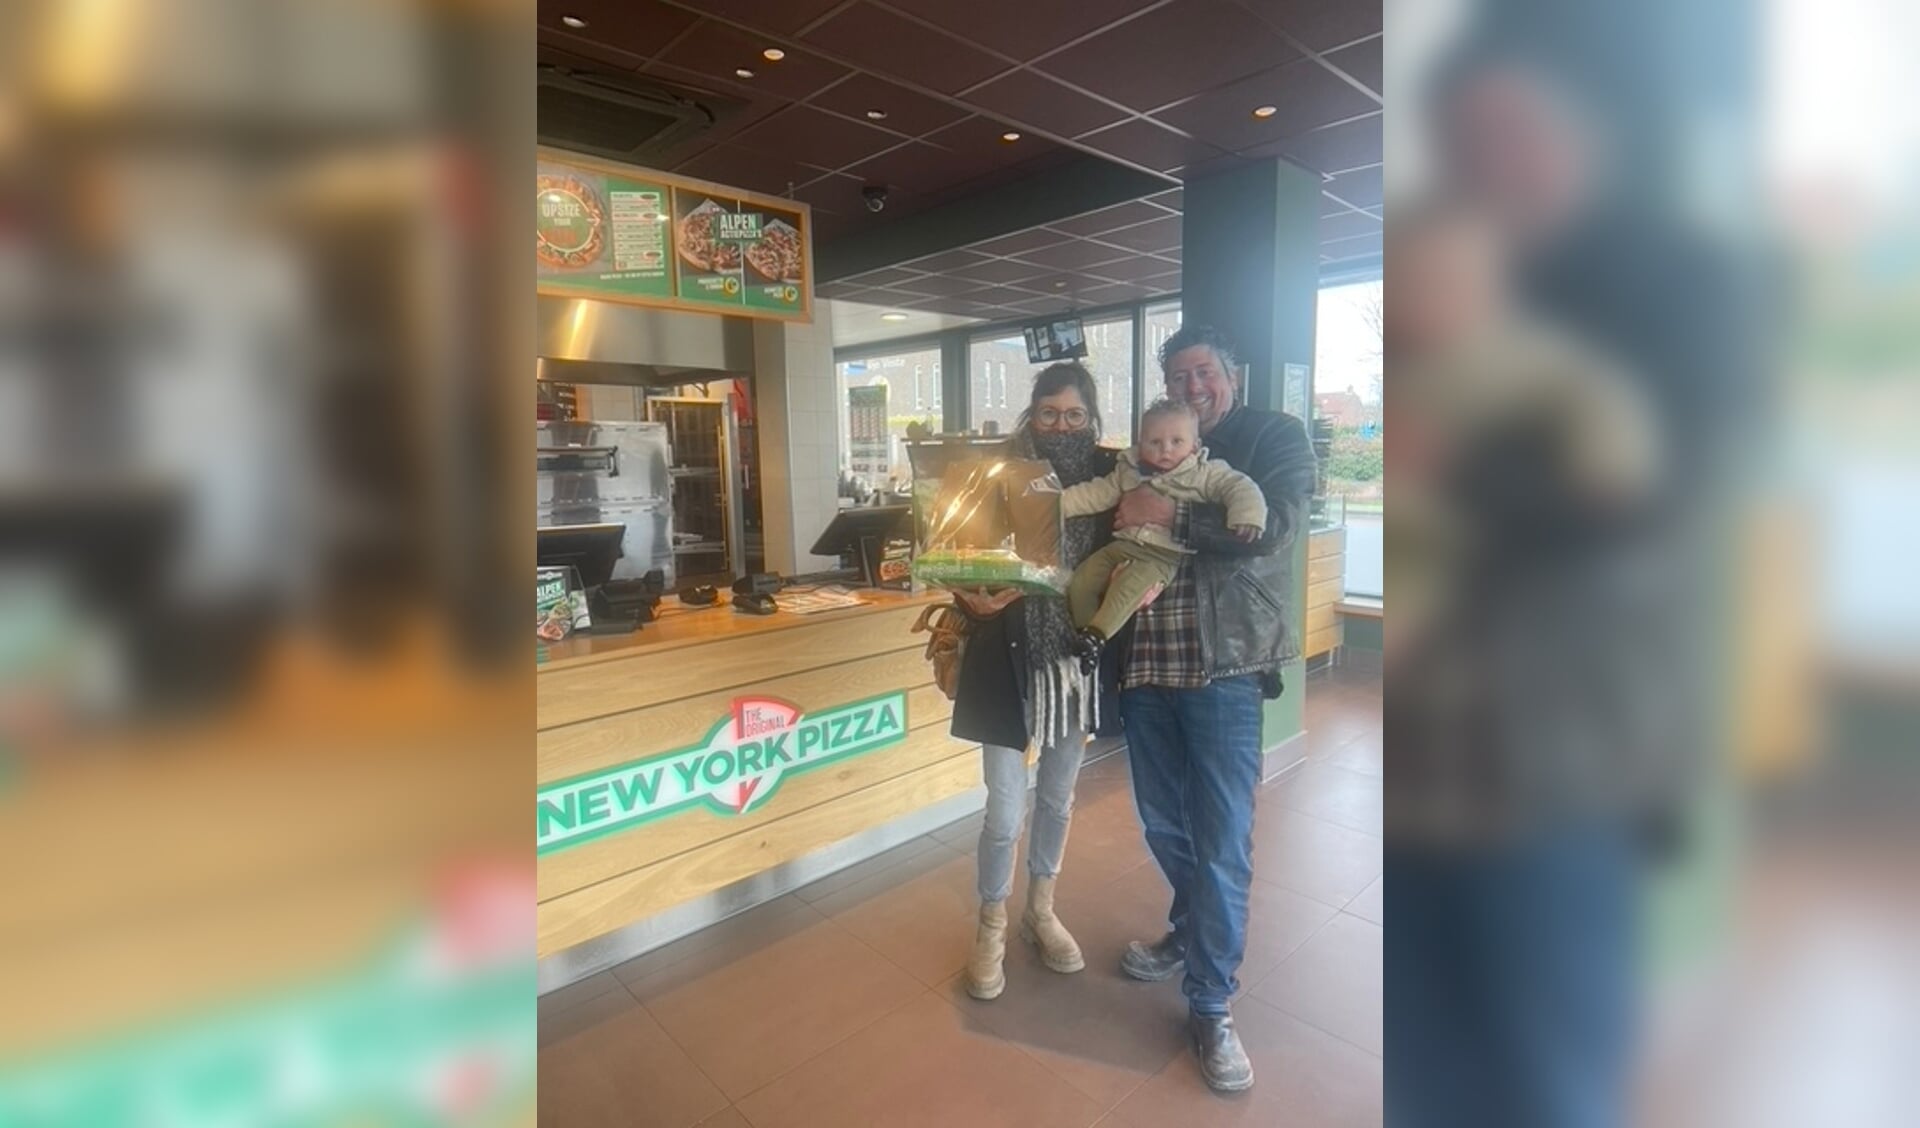 Els kwam haar pizzapakket ophalen bij New York Pizza in Nijkerk. 